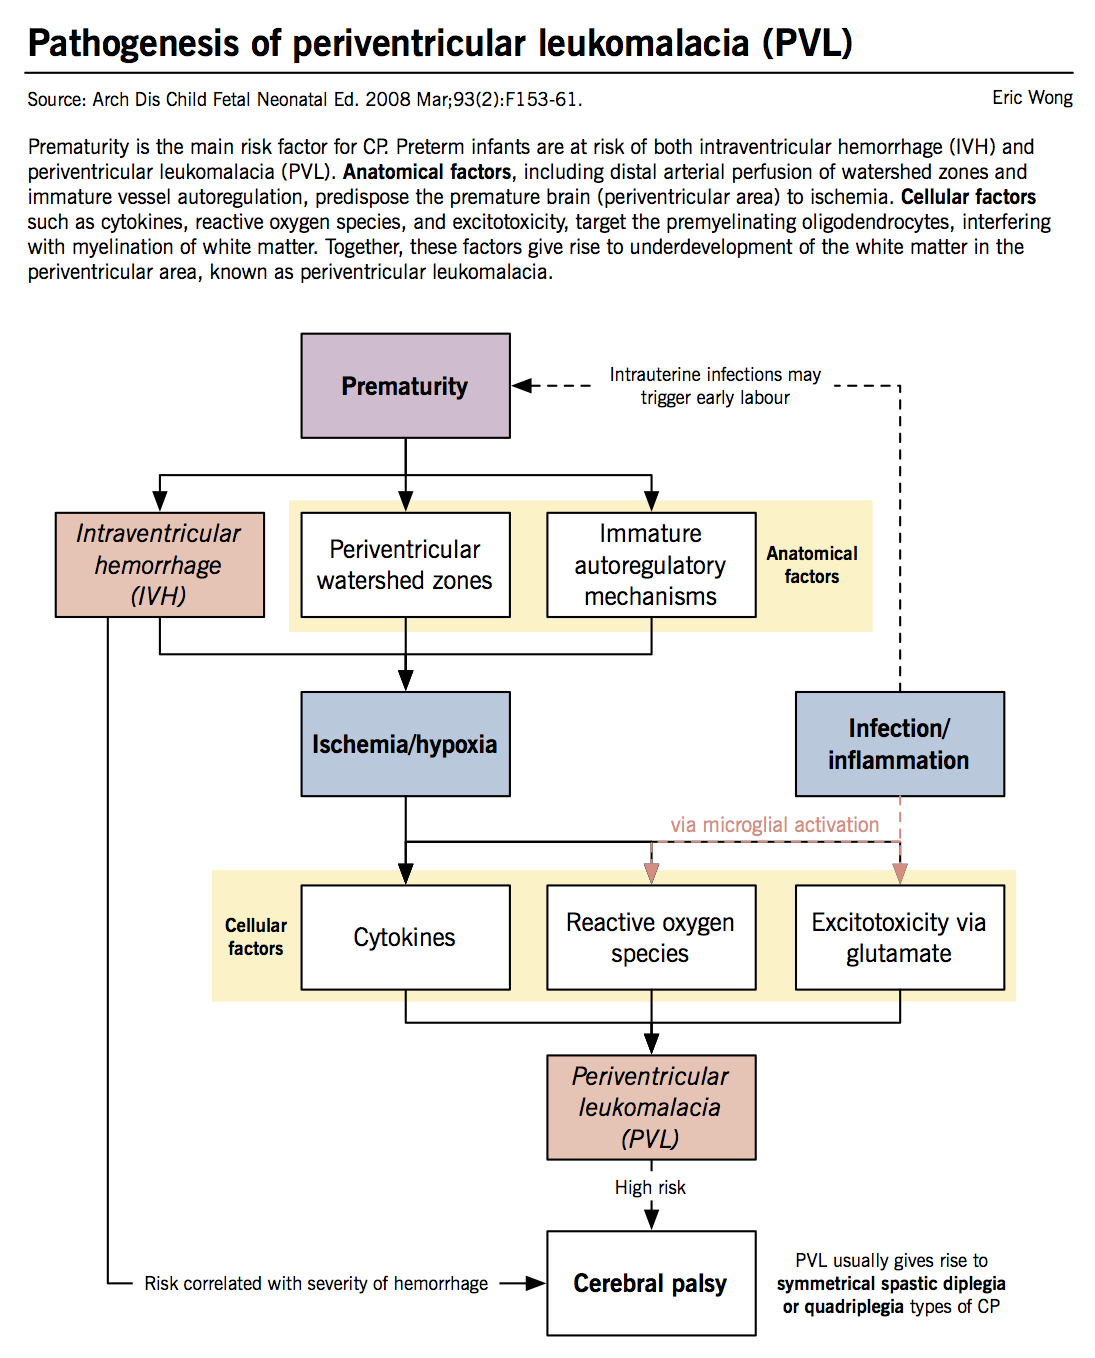 Pathophysiology Of Seizure Flow Chart